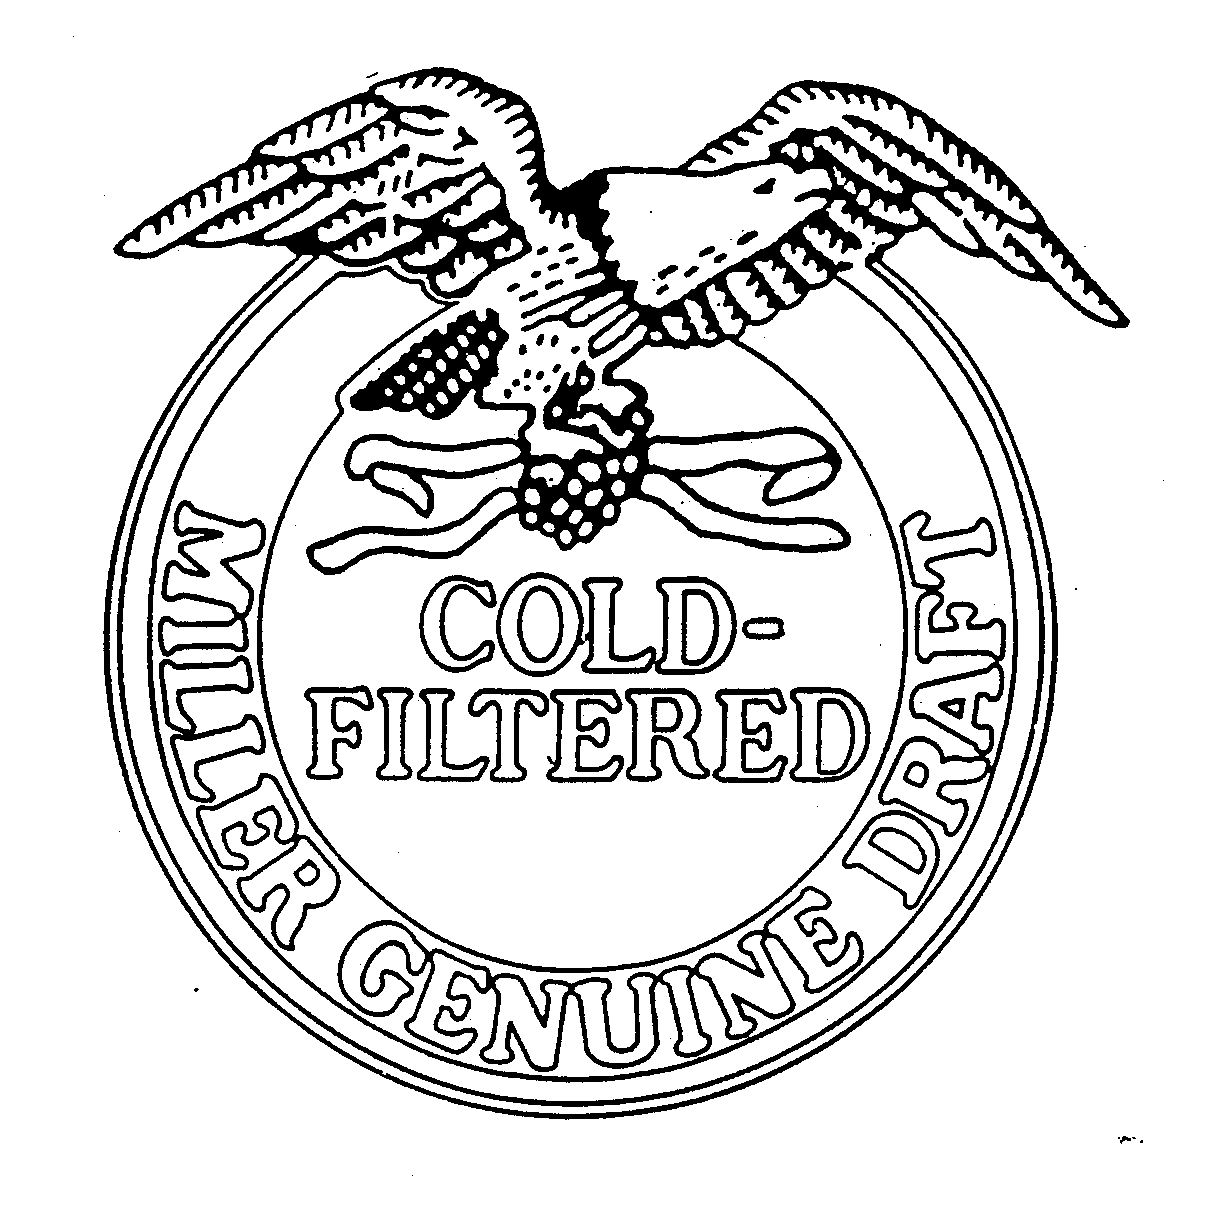  COLD-FILTERED MILLER GENUINE DRAFT